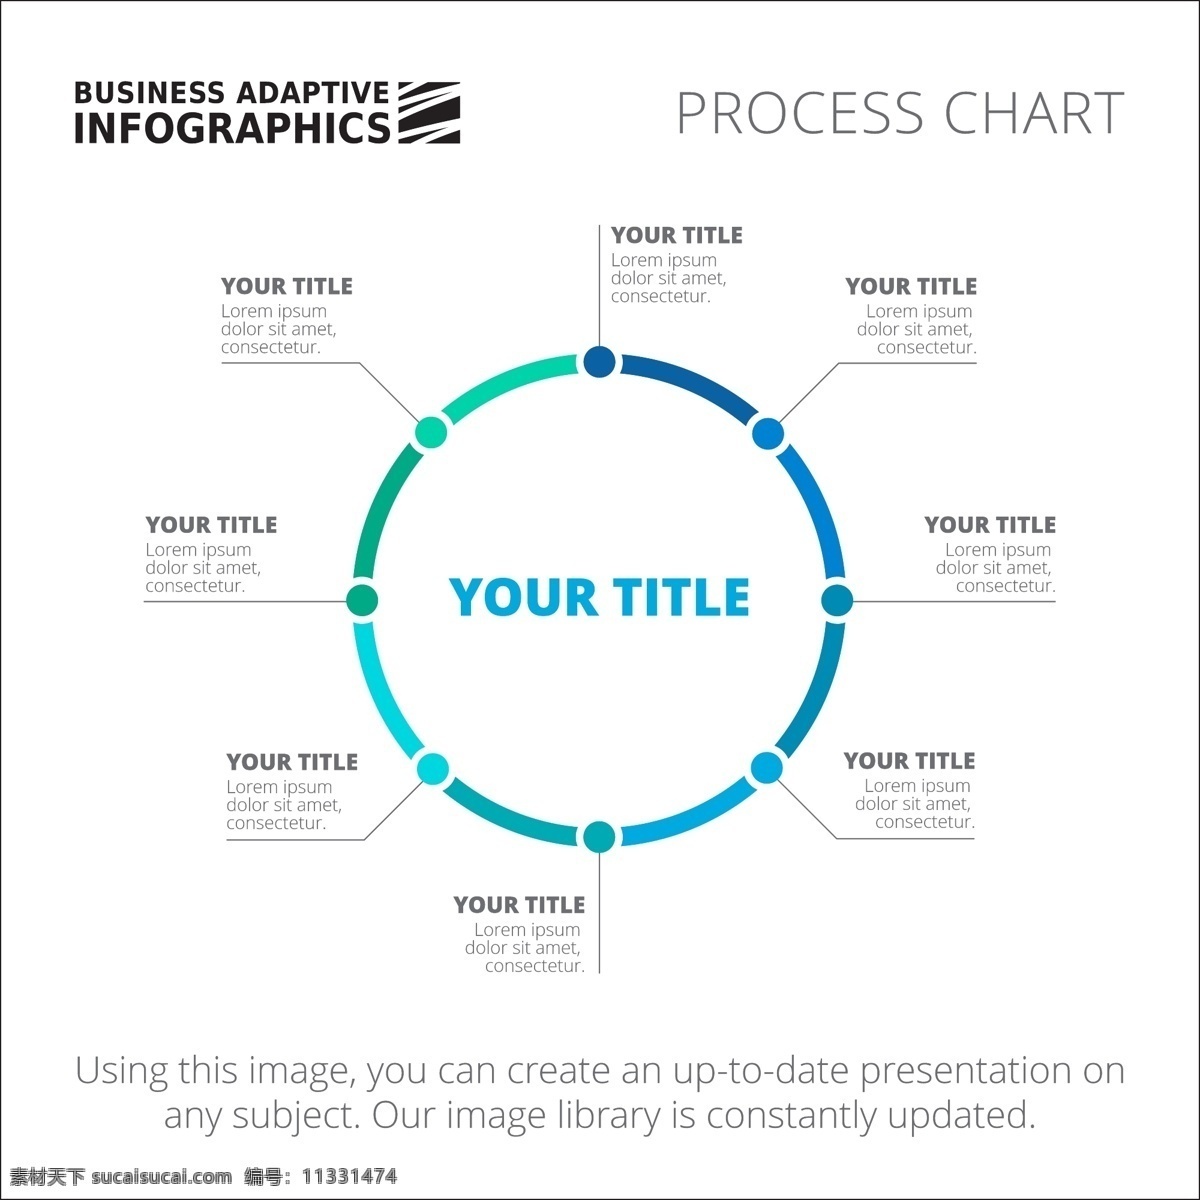 图表模板设计 图表 业务 模板 图形 数据 信息 要素 信息图表元素 圆形 颜色 商业图表 infography 图表模板 图形元素